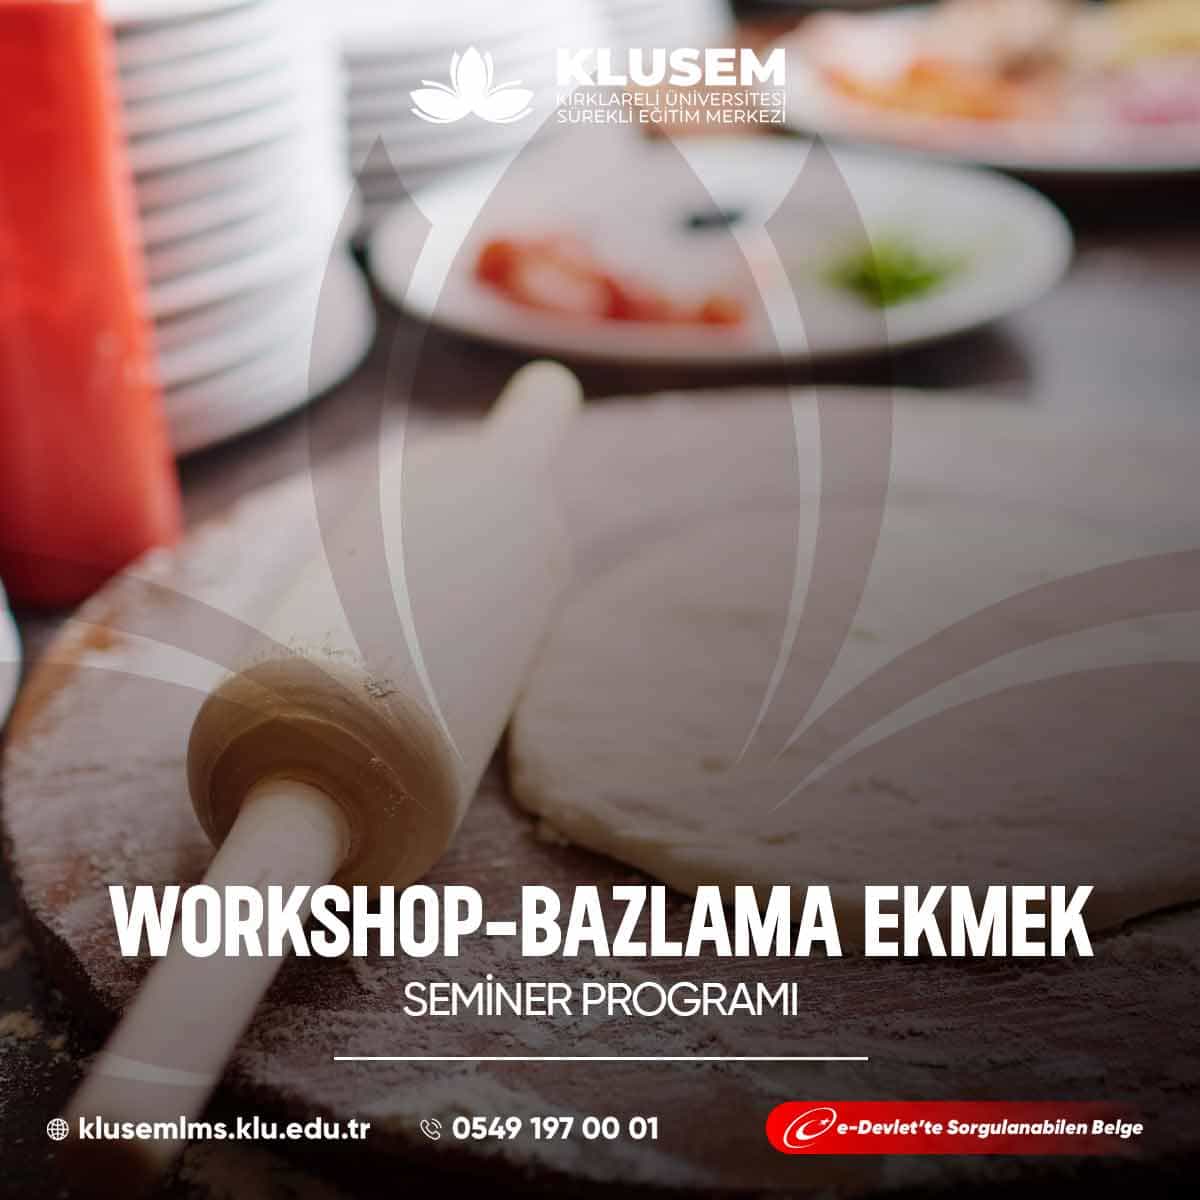  Bazlama ekmek workshopları, katılımcılara geleneksel Türk mutfağının lezzetli bir öğesi olan bazlama ekmeğinin yapımını öğrenme fırsatı sunar. 